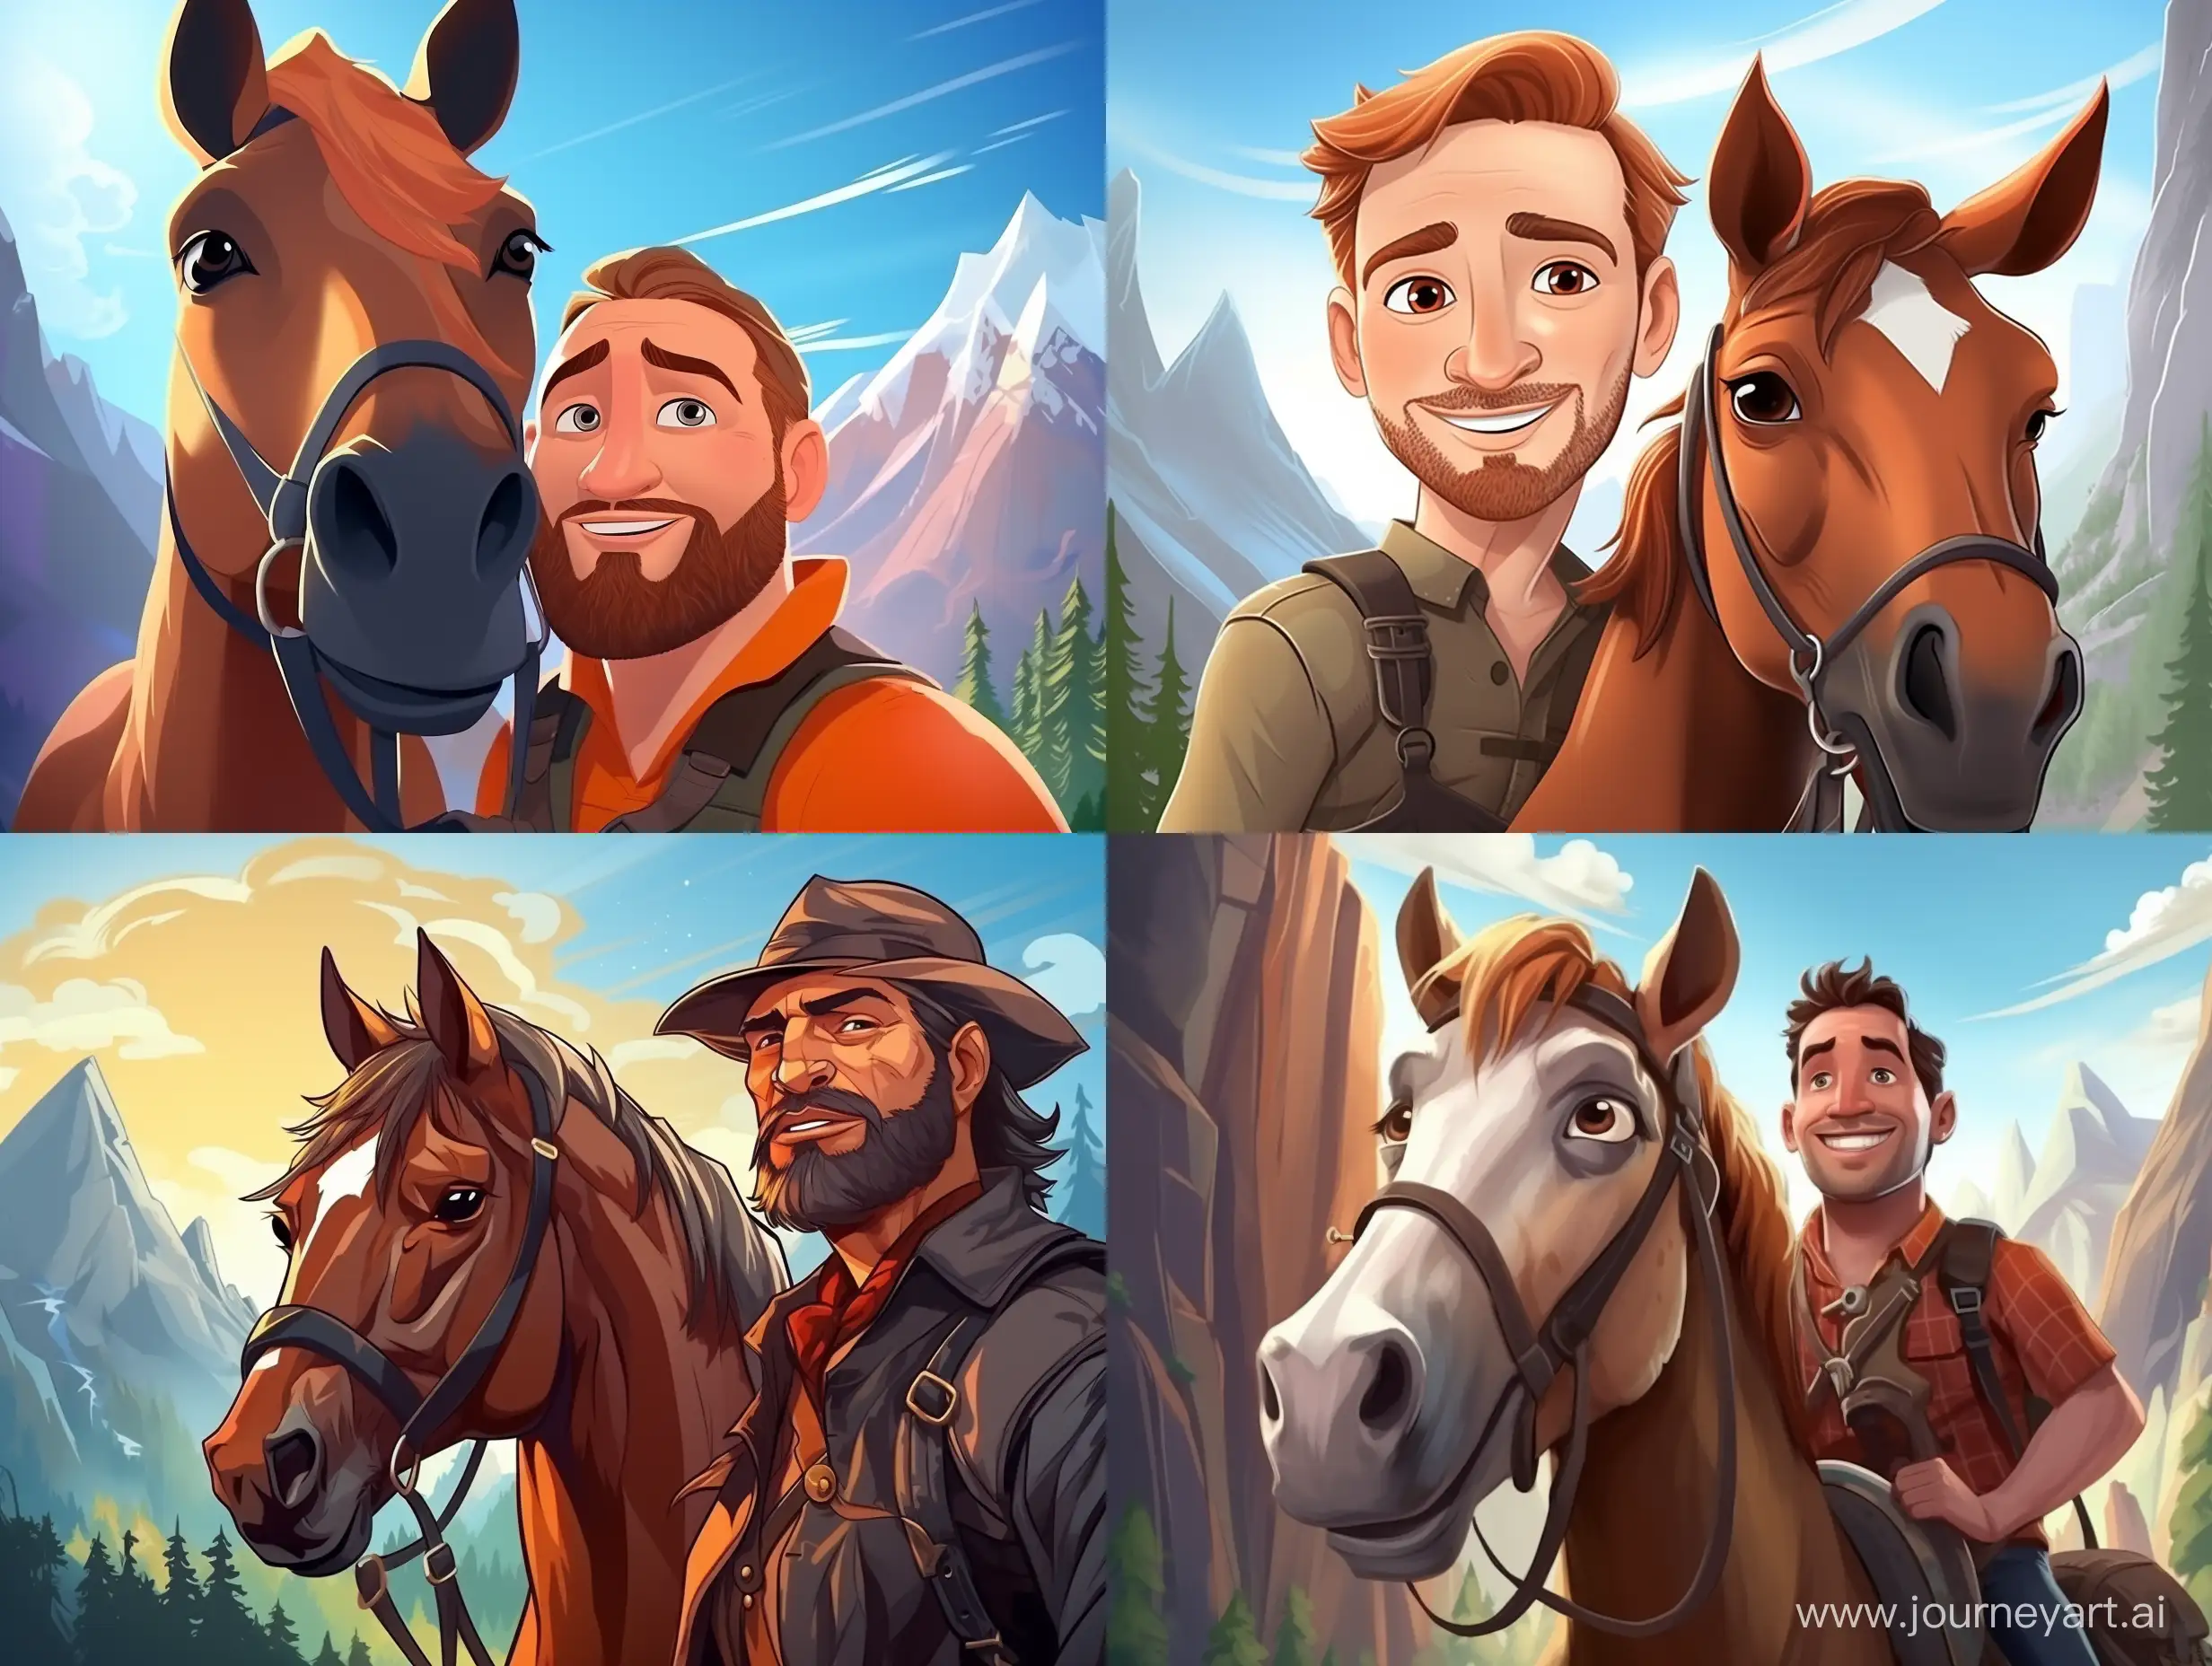 cartoon pixar style of a портрет храбрый мужчина с храбрым конем на фоне гор